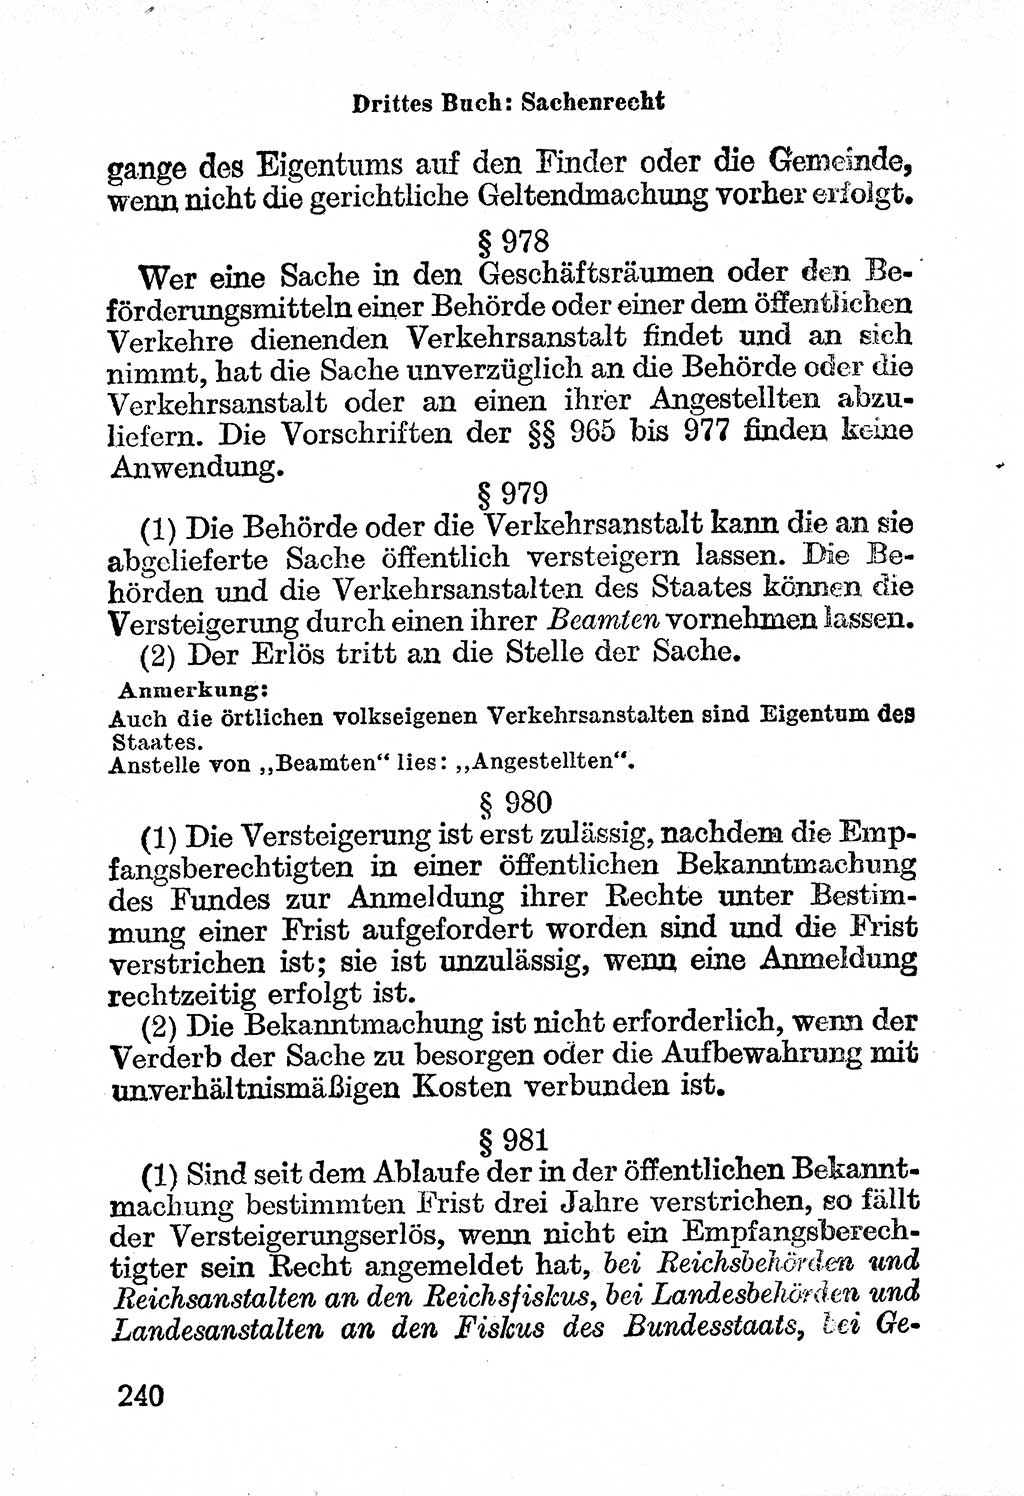 Bürgerliches Gesetzbuch (BGB) nebst wichtigen Nebengesetzen [Deutsche Demokratische Republik (DDR)] 1956, Seite 240 (BGB Nebenges. DDR 1956, S. 240)